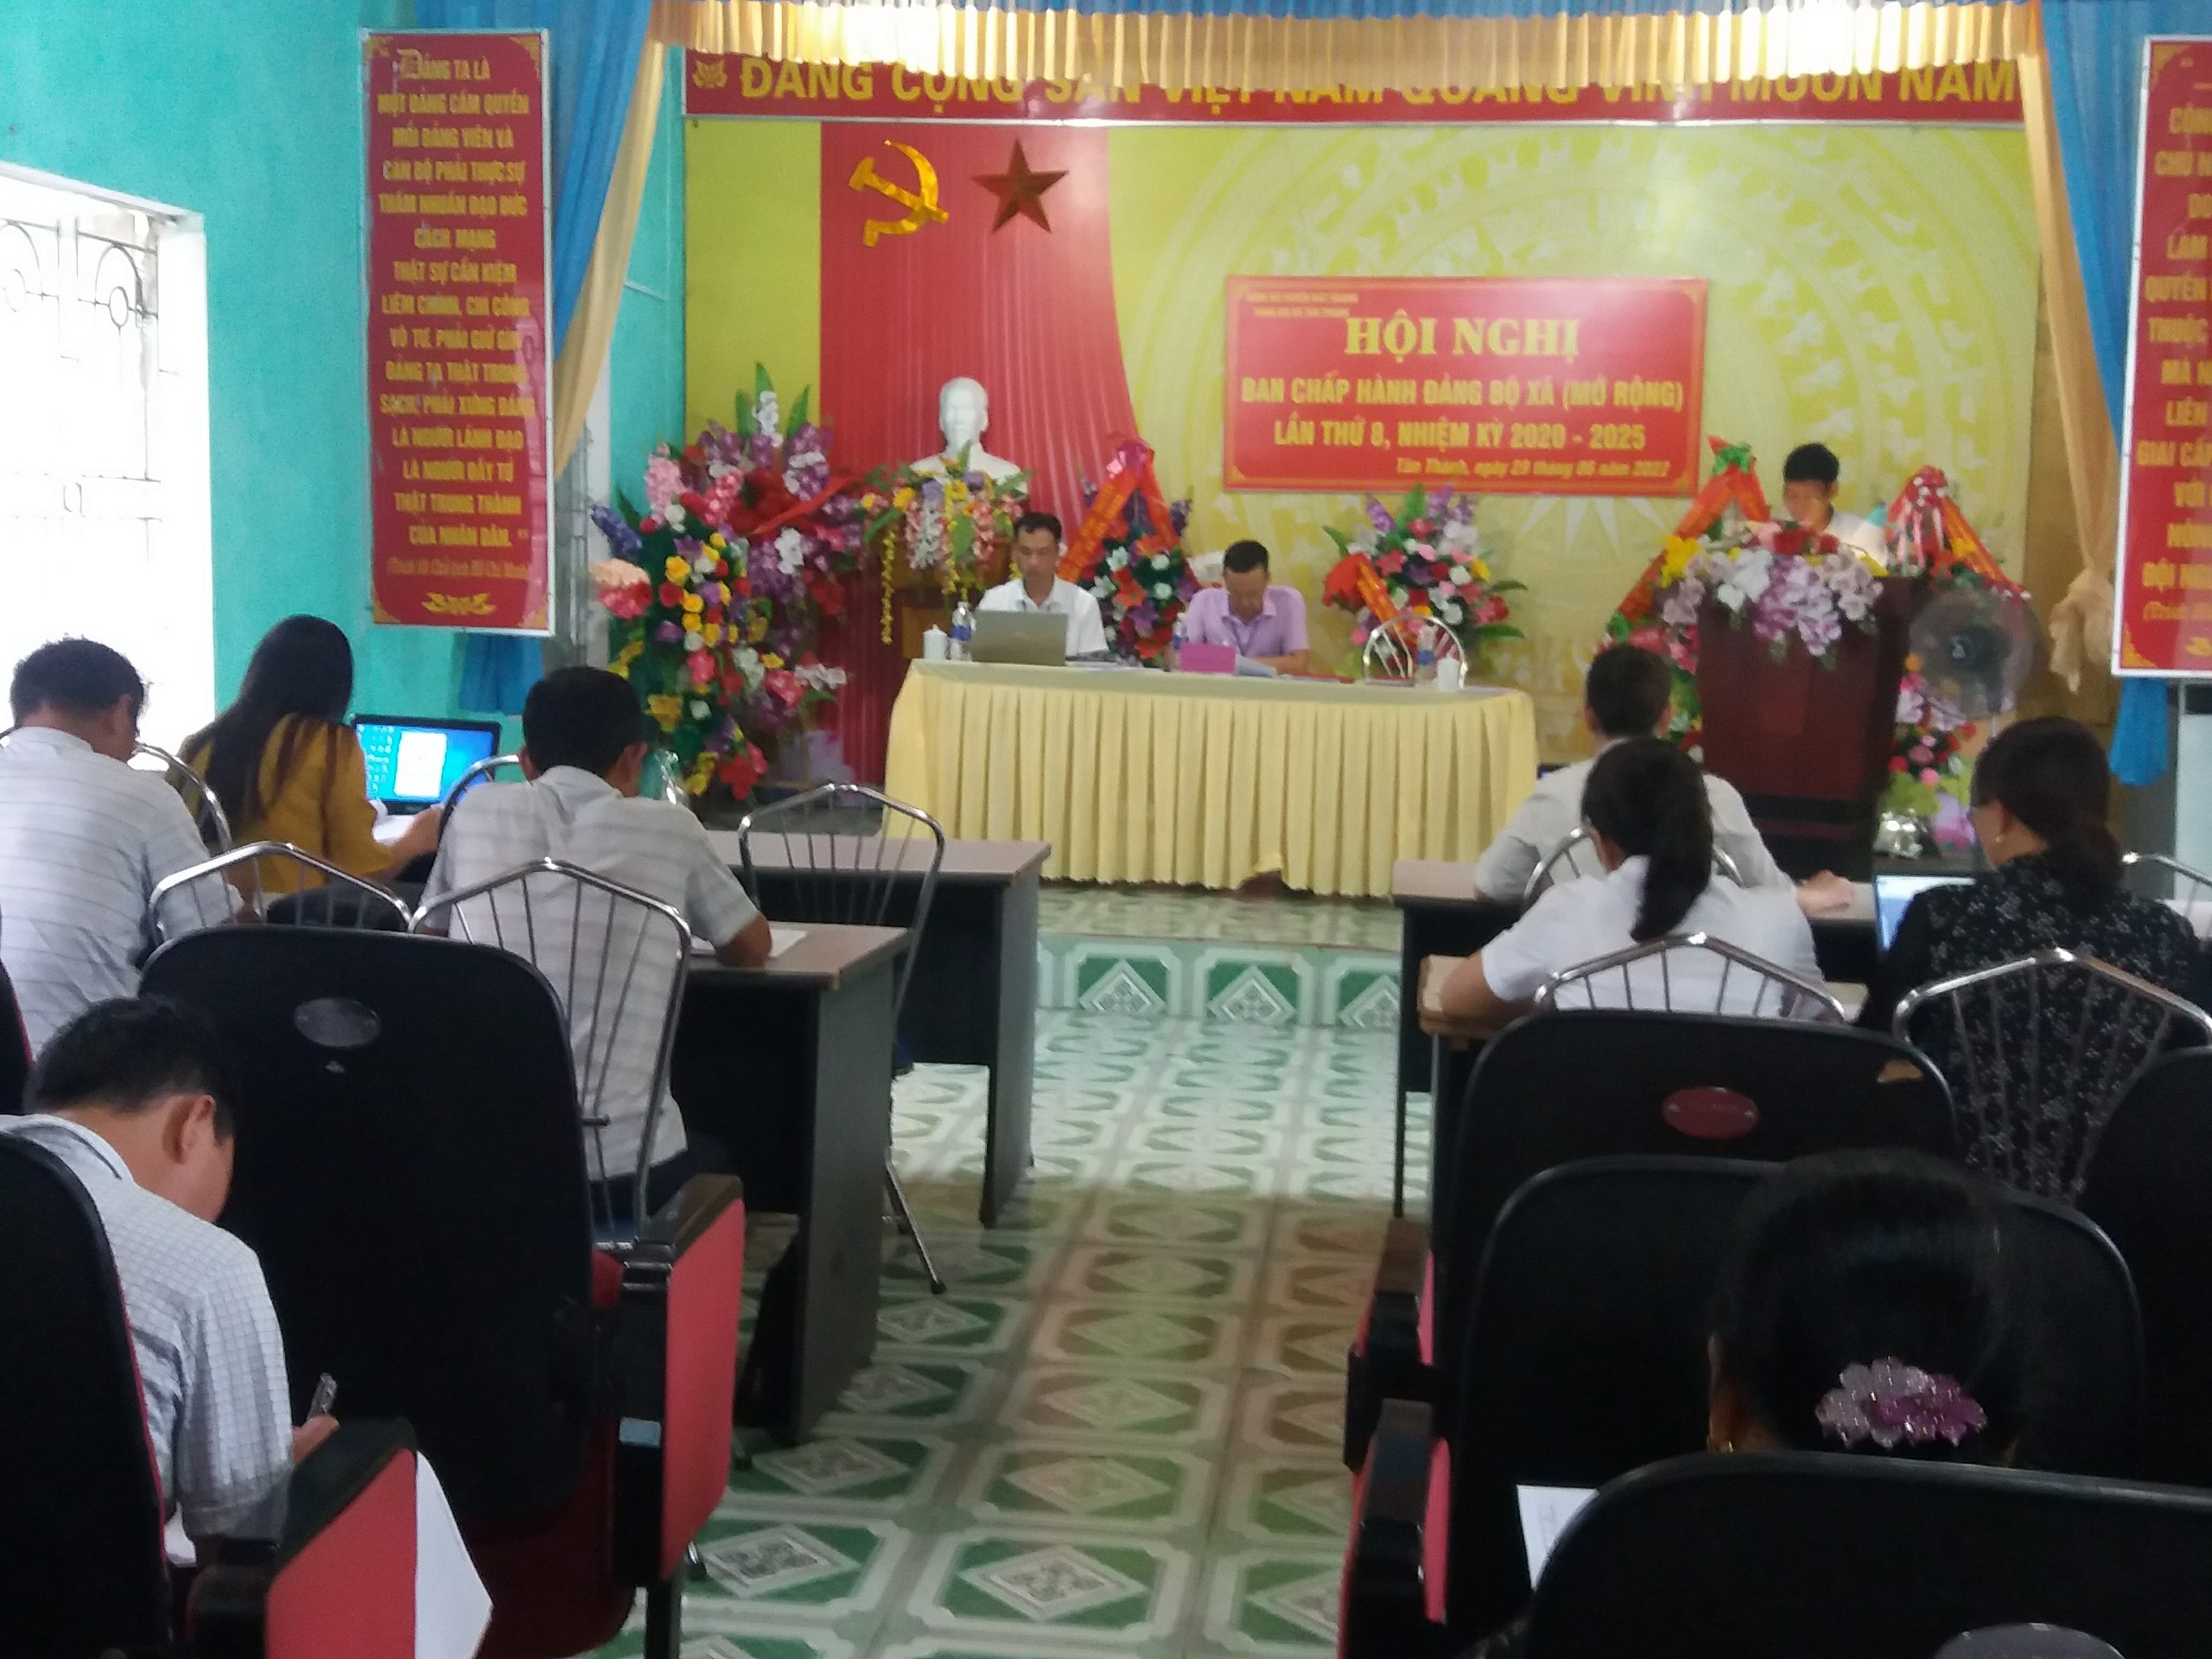 Hội nghị BCH Đảng bộ xã Tân Thành (mở rộng) lần thứ 8, nhiệm kỳ 2020 - 2025